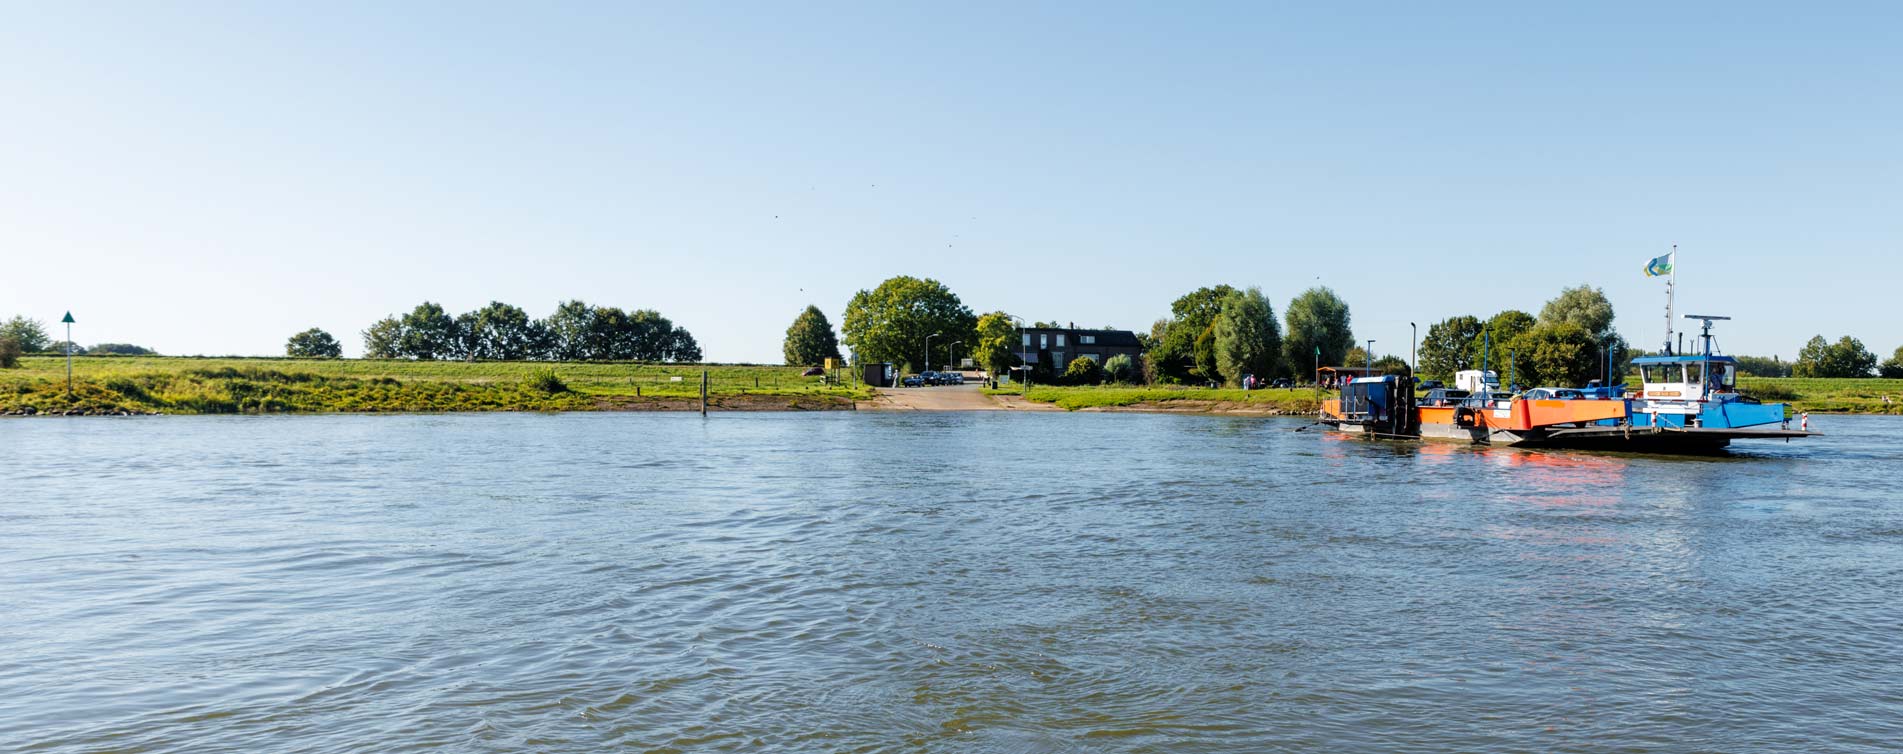 Veerpont over de IJssel bij Wijhe - Hannink Financiële Dienstverlening